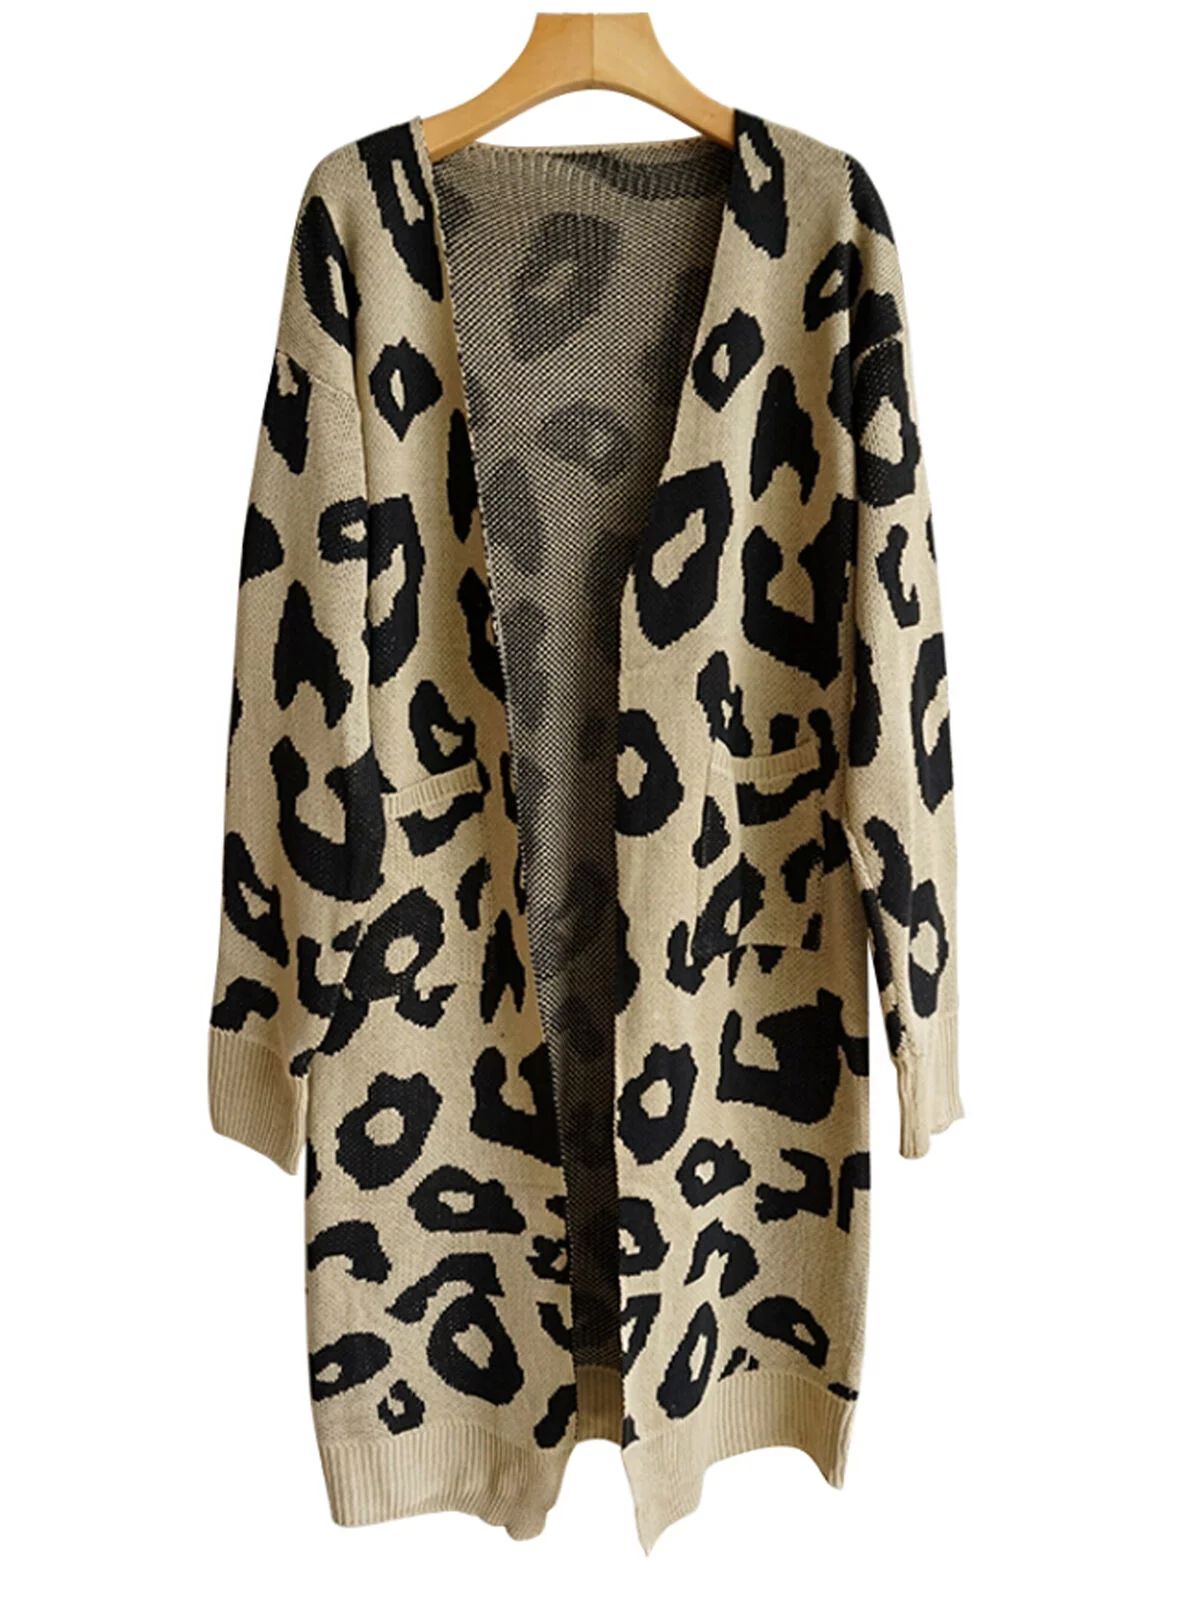 wsevypo Women's Long Sleeves Leopard Print Knitting Cardigan Open Front Warm Sweater Outwear Coat... | Walmart (US)